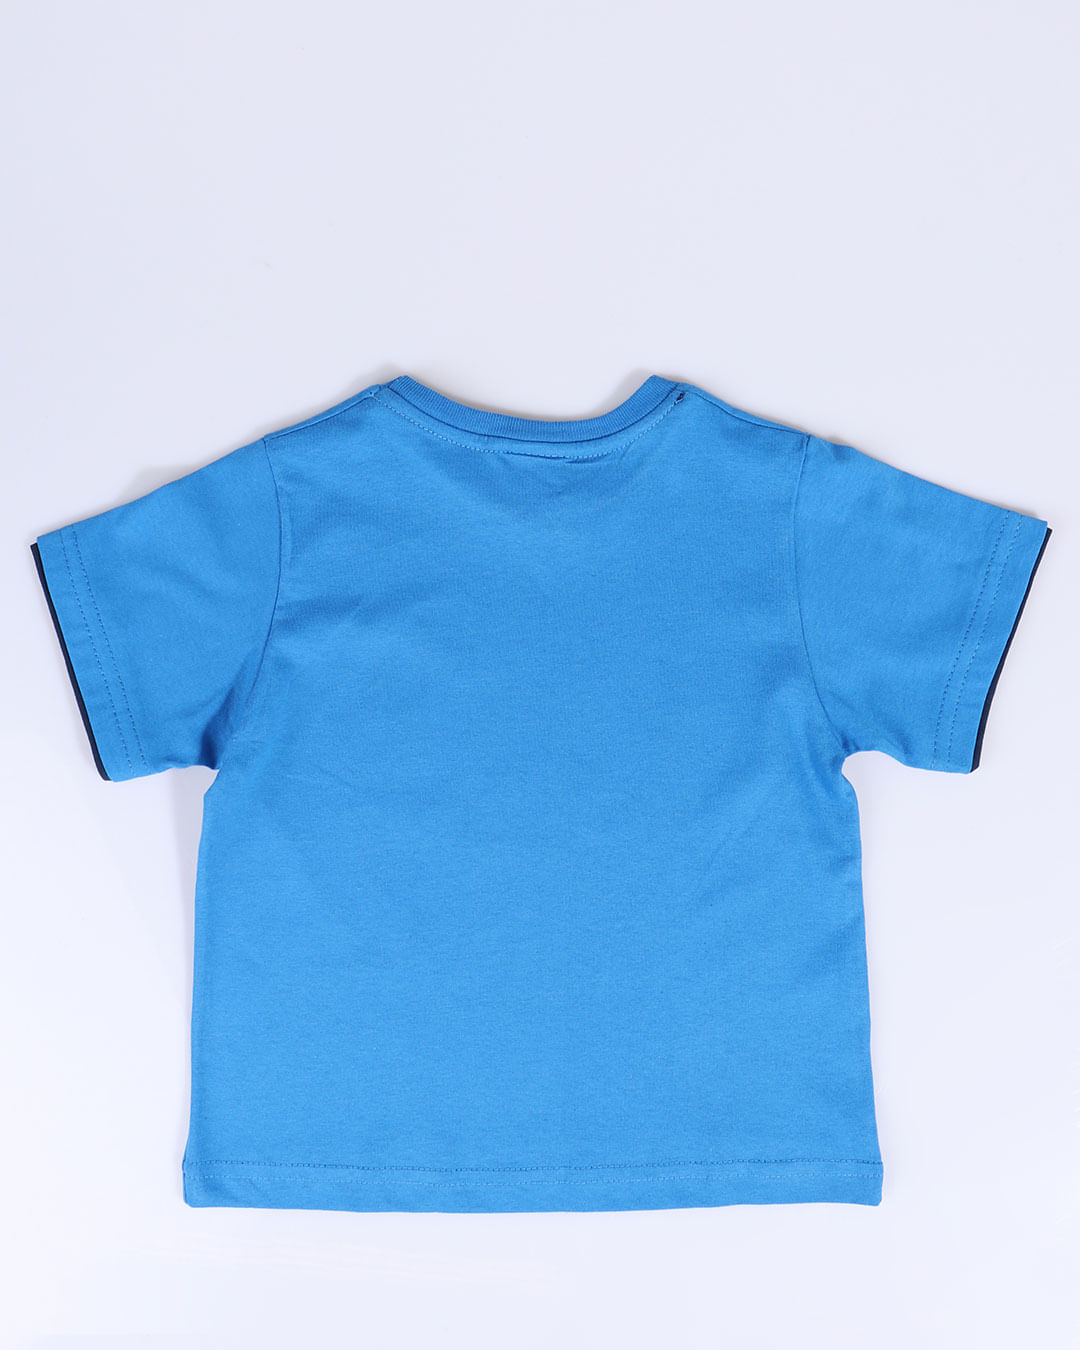 Camiseta-Bebe-Estampa-Skate-Azul